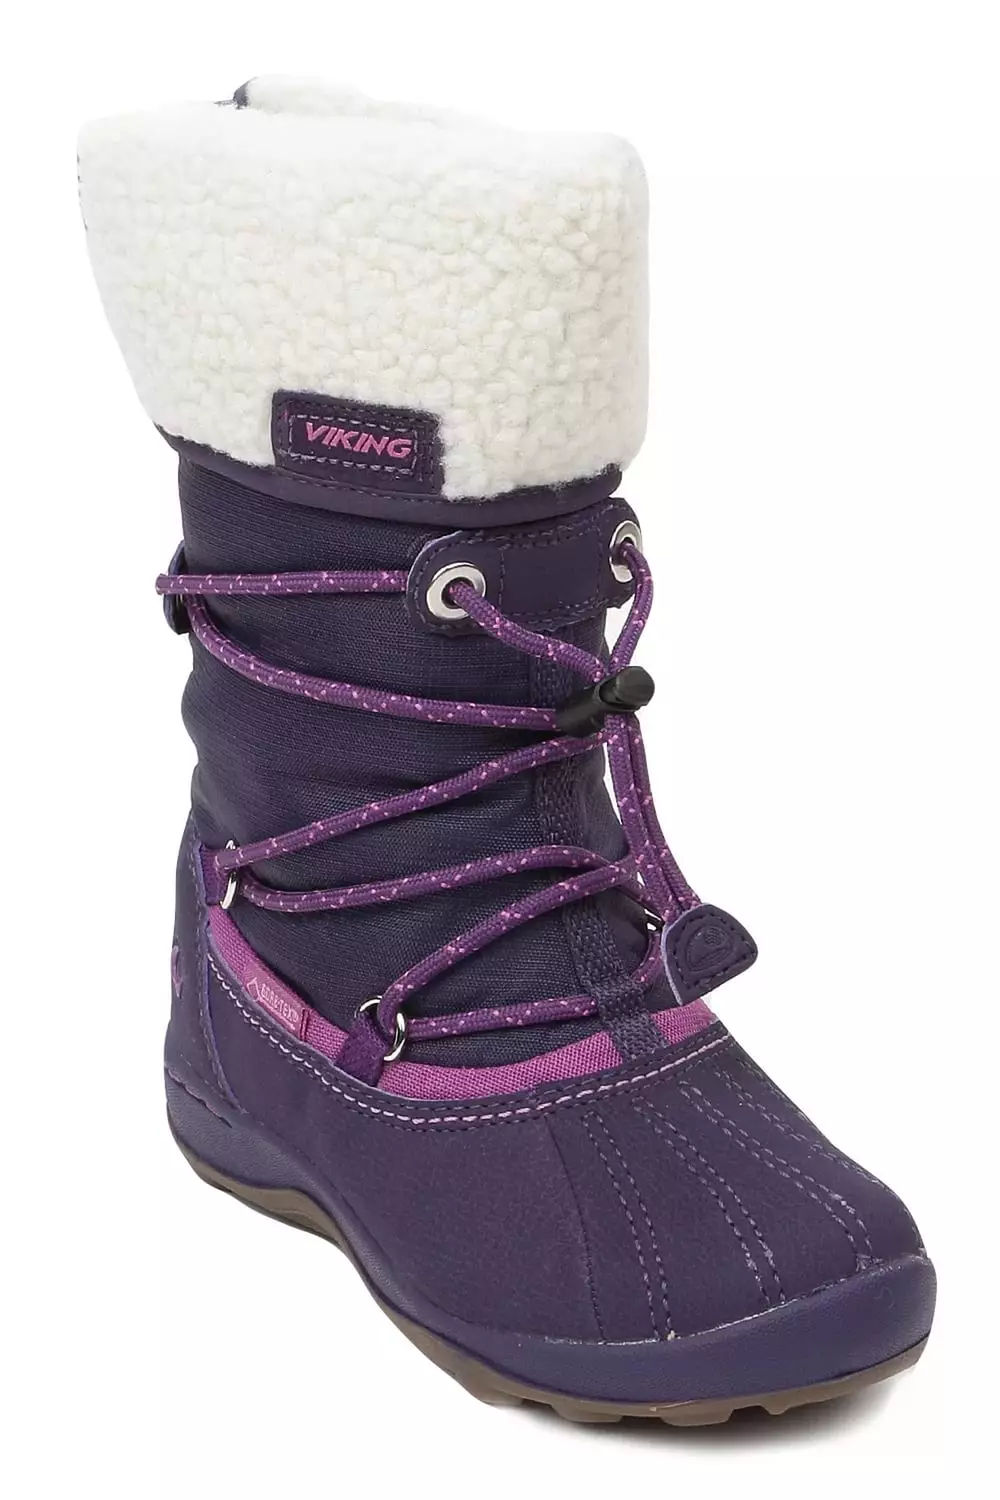 الأحذية Wikigi (73 صور): الأطفال في فصل الشتاء، ونماذج من مادة البولي يوريثين المرأة، شبكة الأبعاد ومراجعات فايكنغ 2258_5